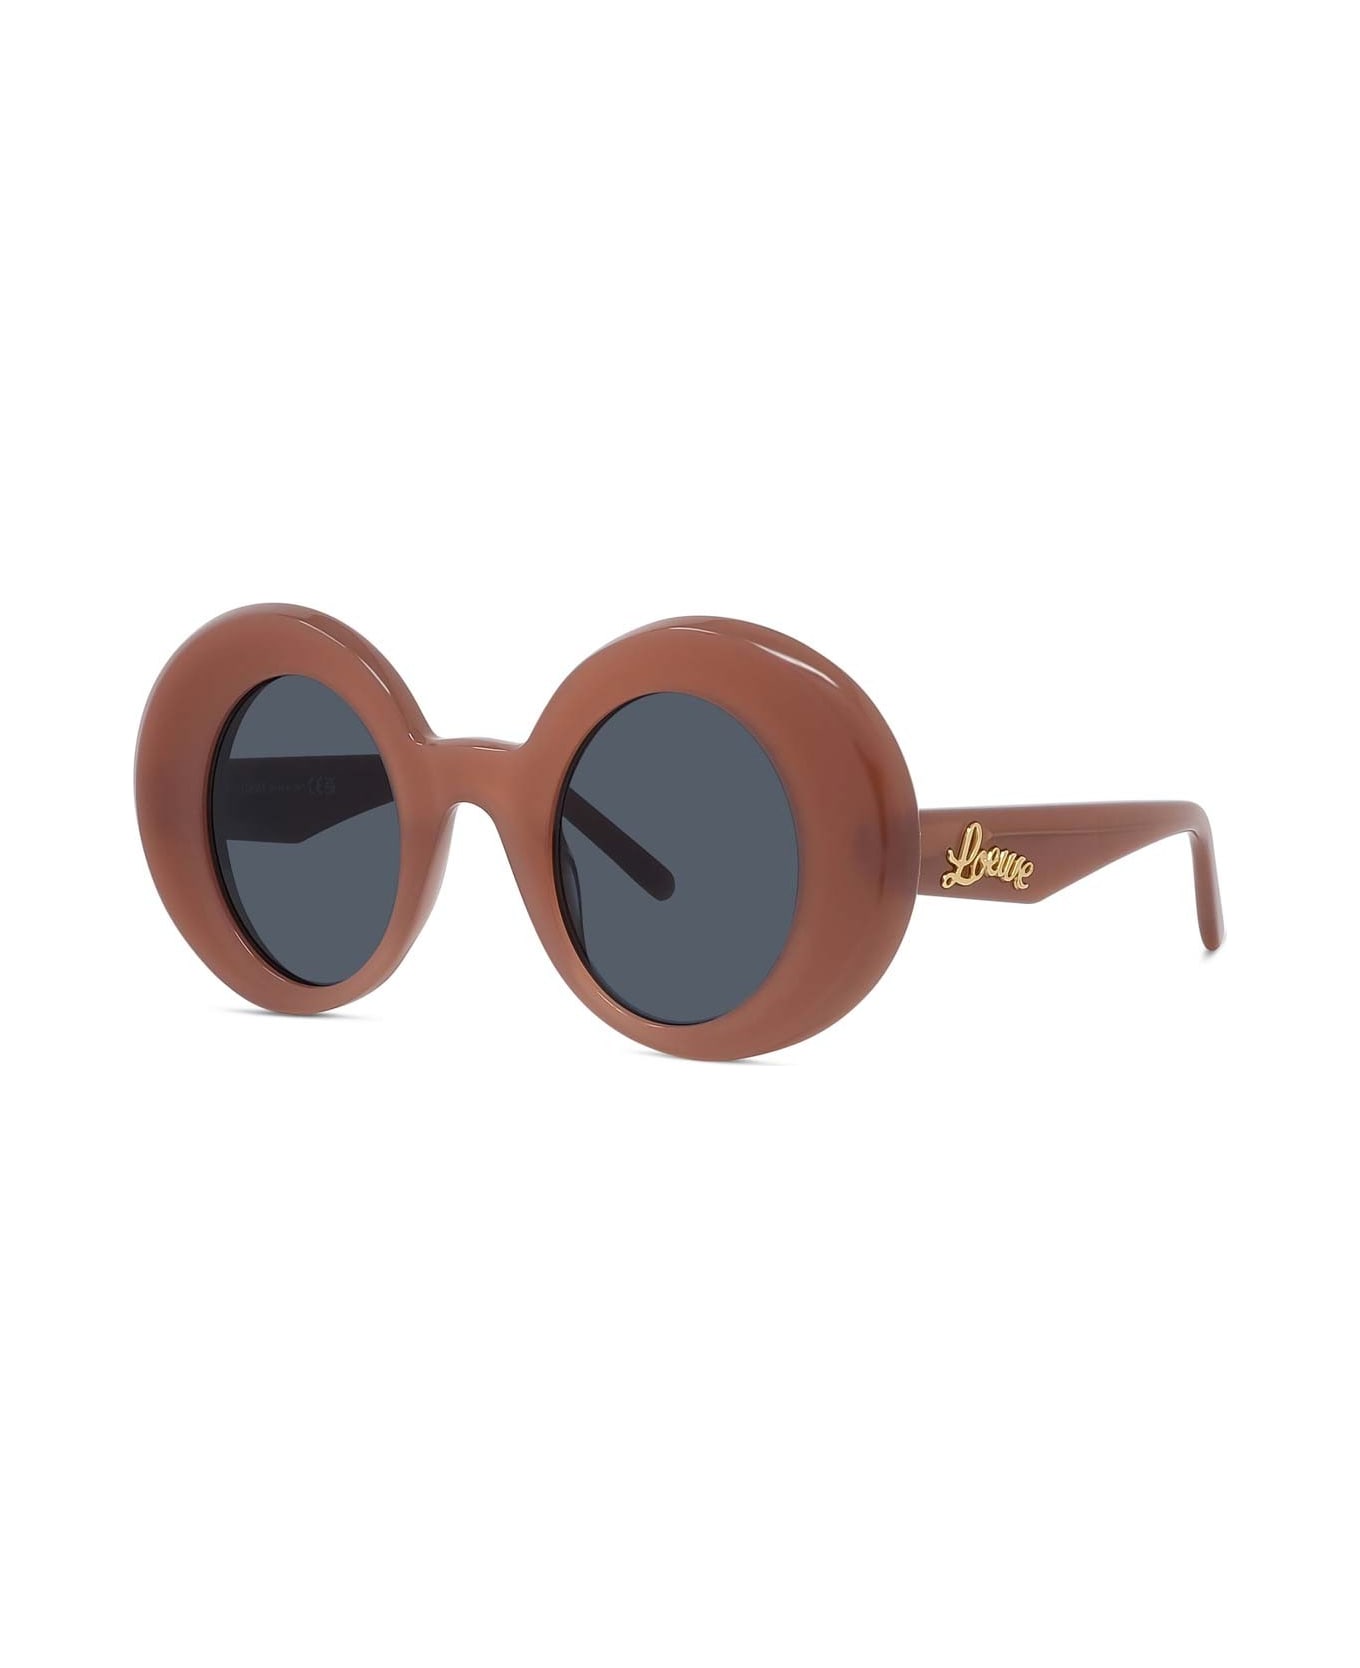 Loewe Sunglasses - Rosso/Grigio